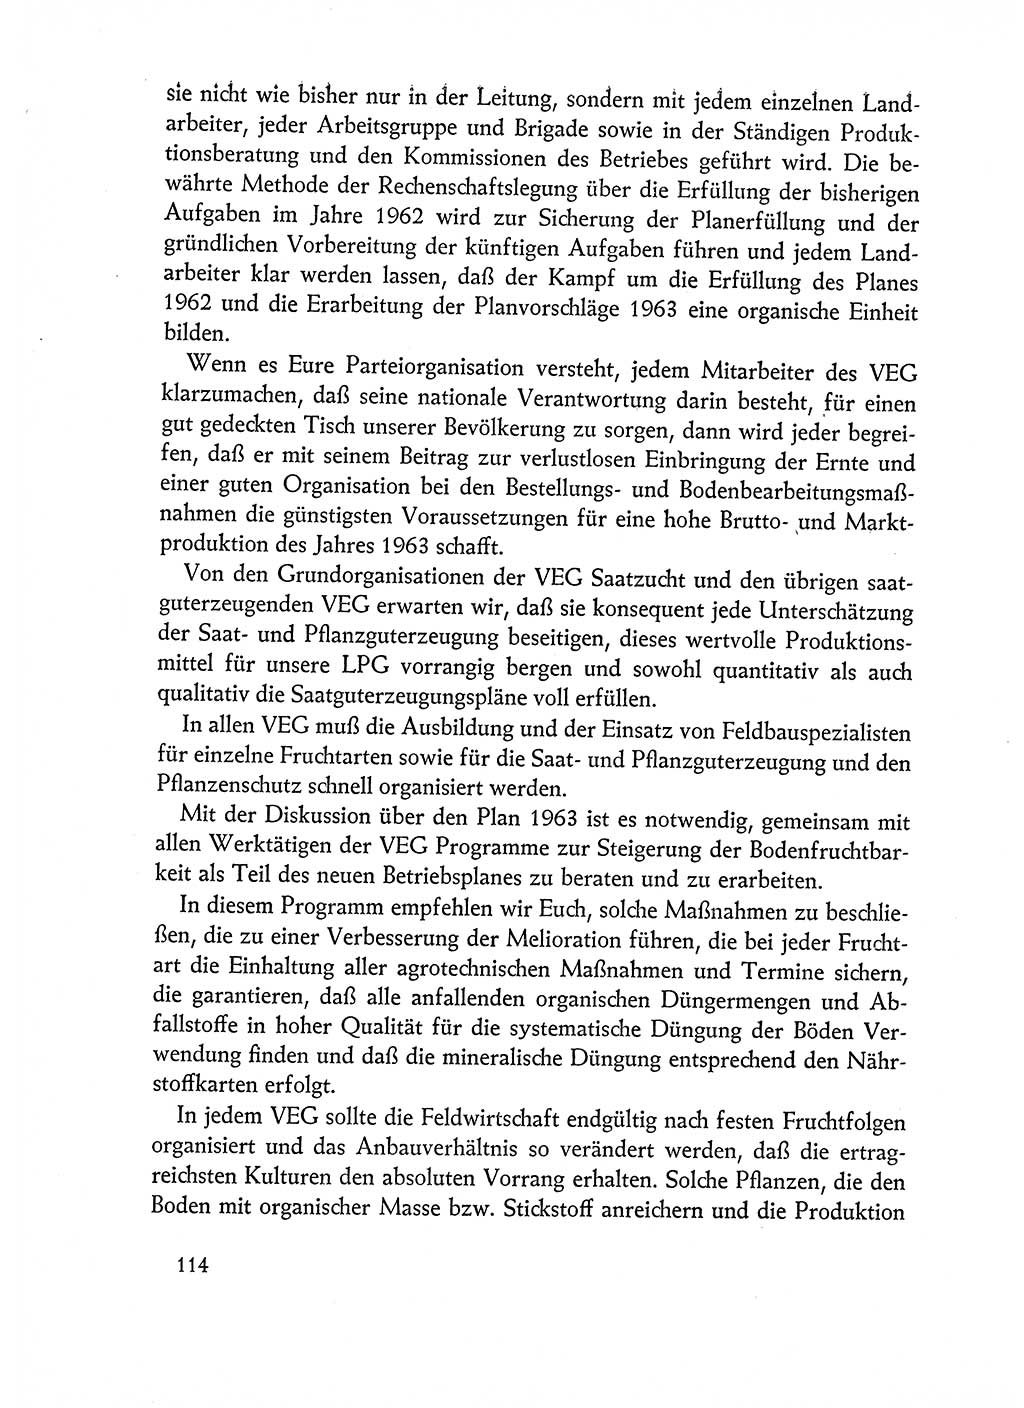 Dokumente der Sozialistischen Einheitspartei Deutschlands (SED) [Deutsche Demokratische Republik (DDR)] 1962-1963, Seite 114 (Dok. SED DDR 1962-1963, S. 114)